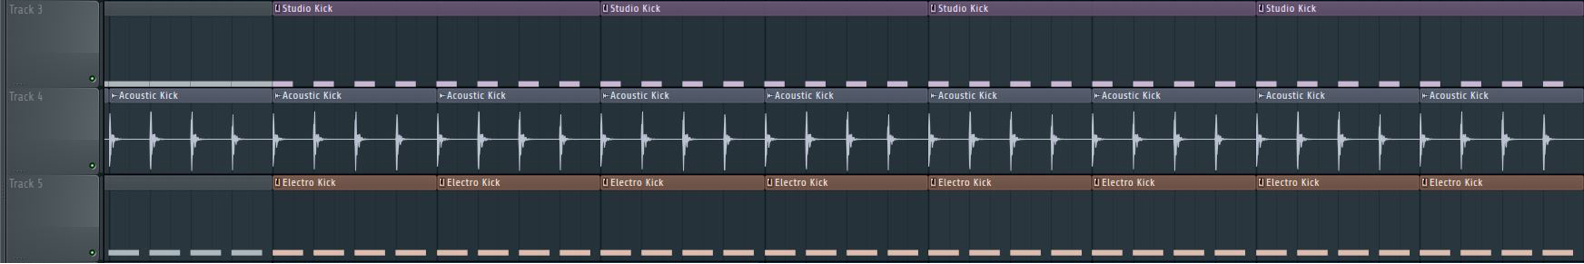 Как создавать музыкальные произведения в FL Studio: интересные приемы - 2